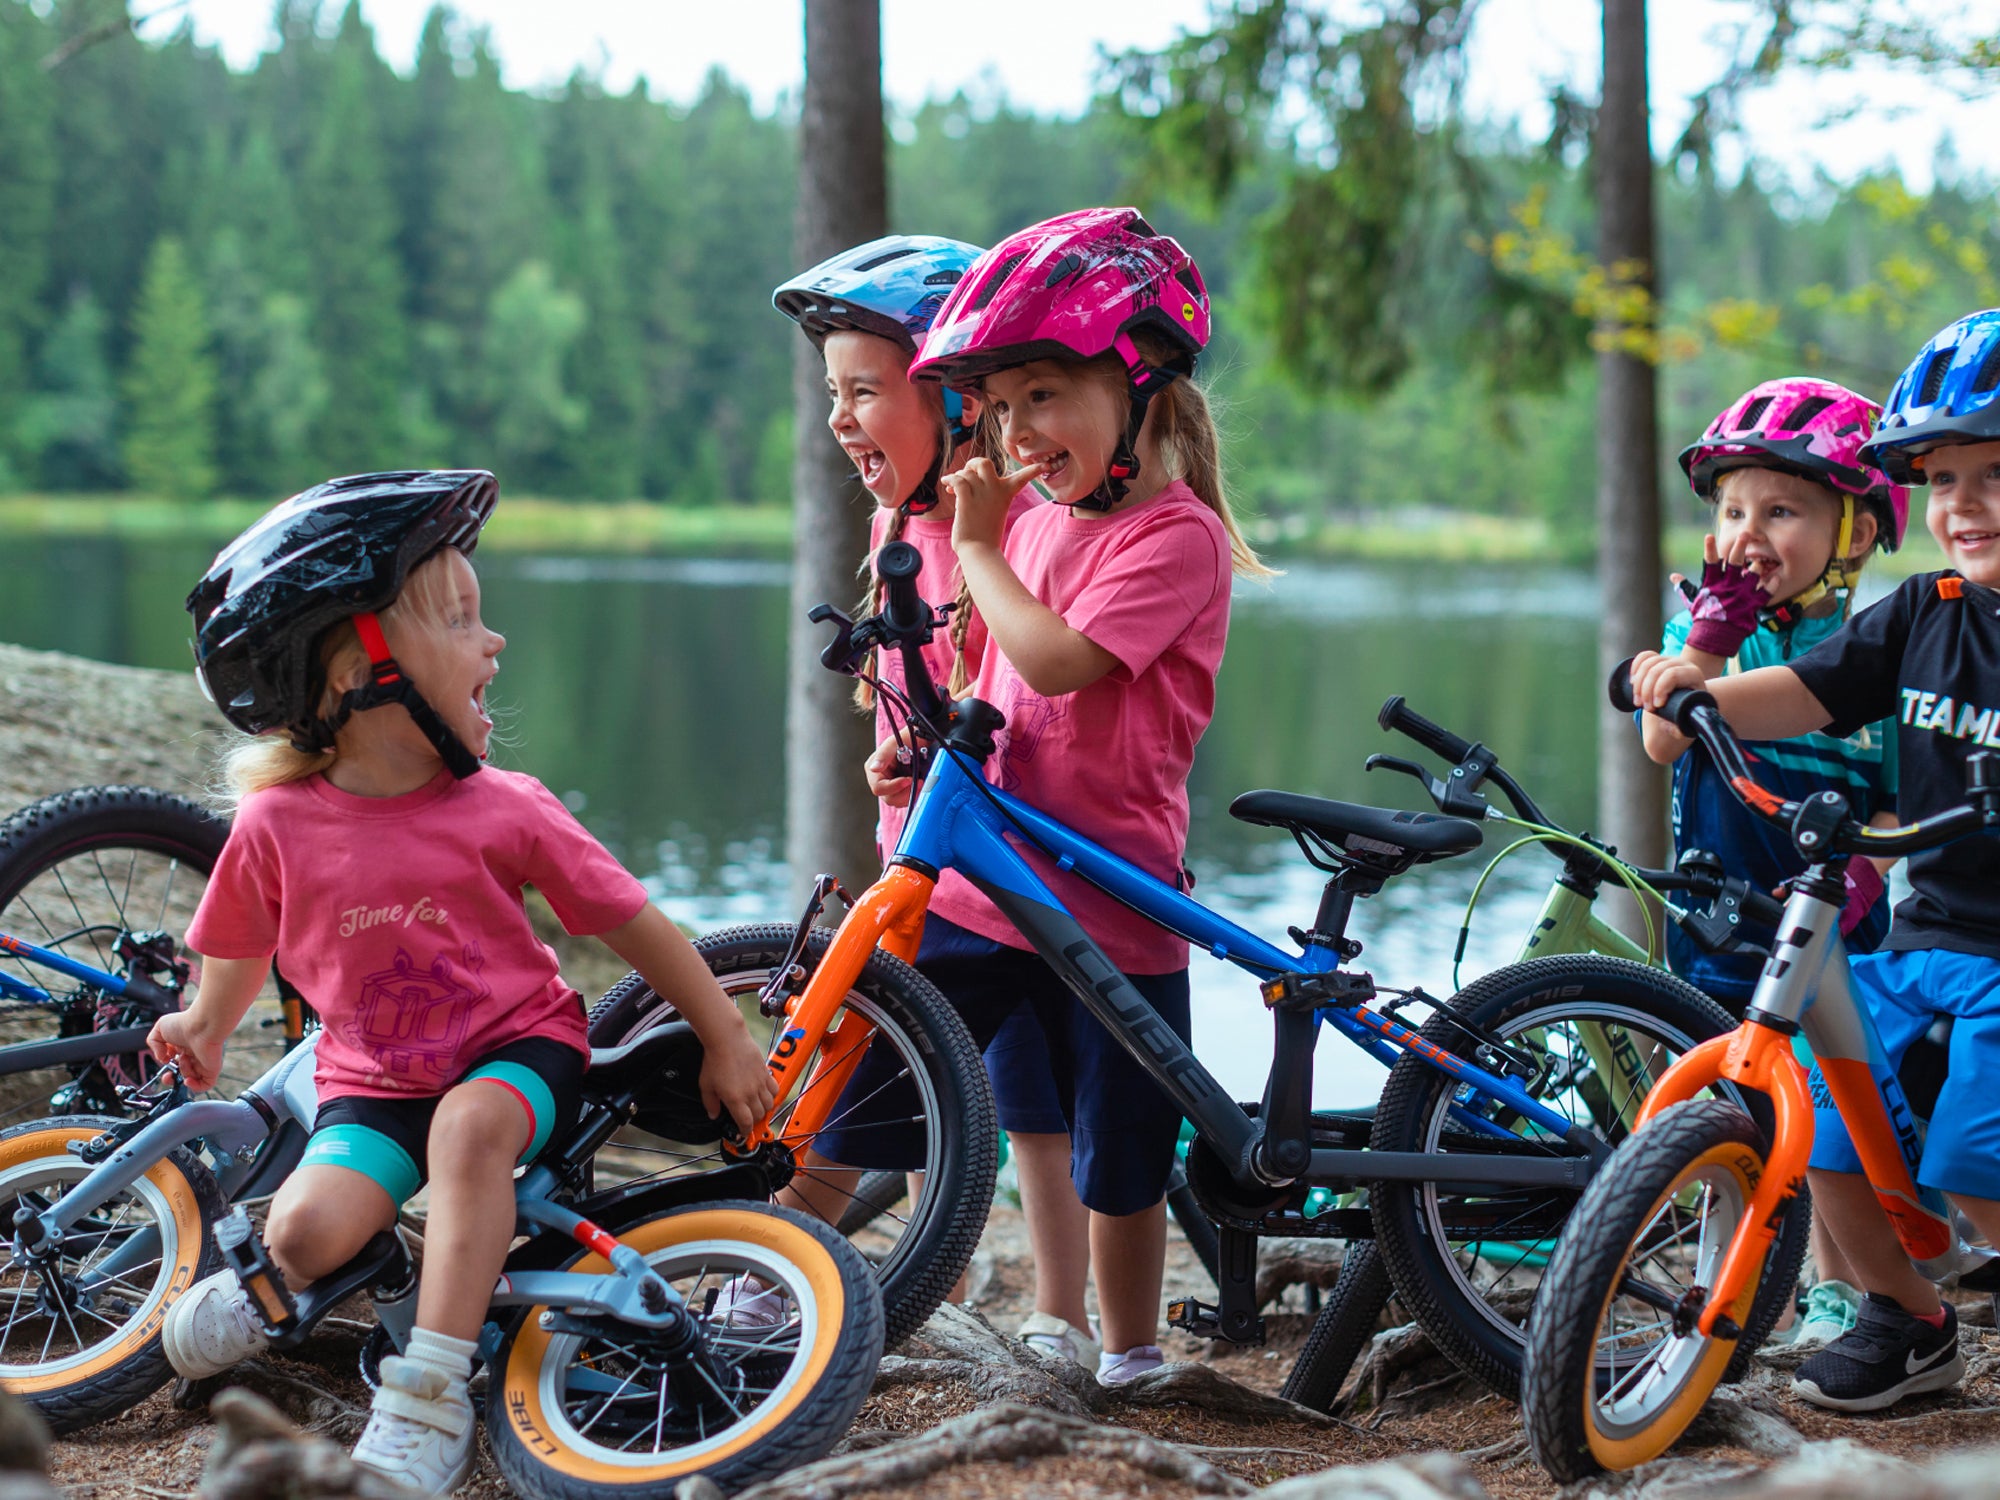 Fünf Kinder in sportlicher Kleidung und Fahrradhelmen stehen mit ihren Cube Kinderfahrrädern neben einem See in einem Wald